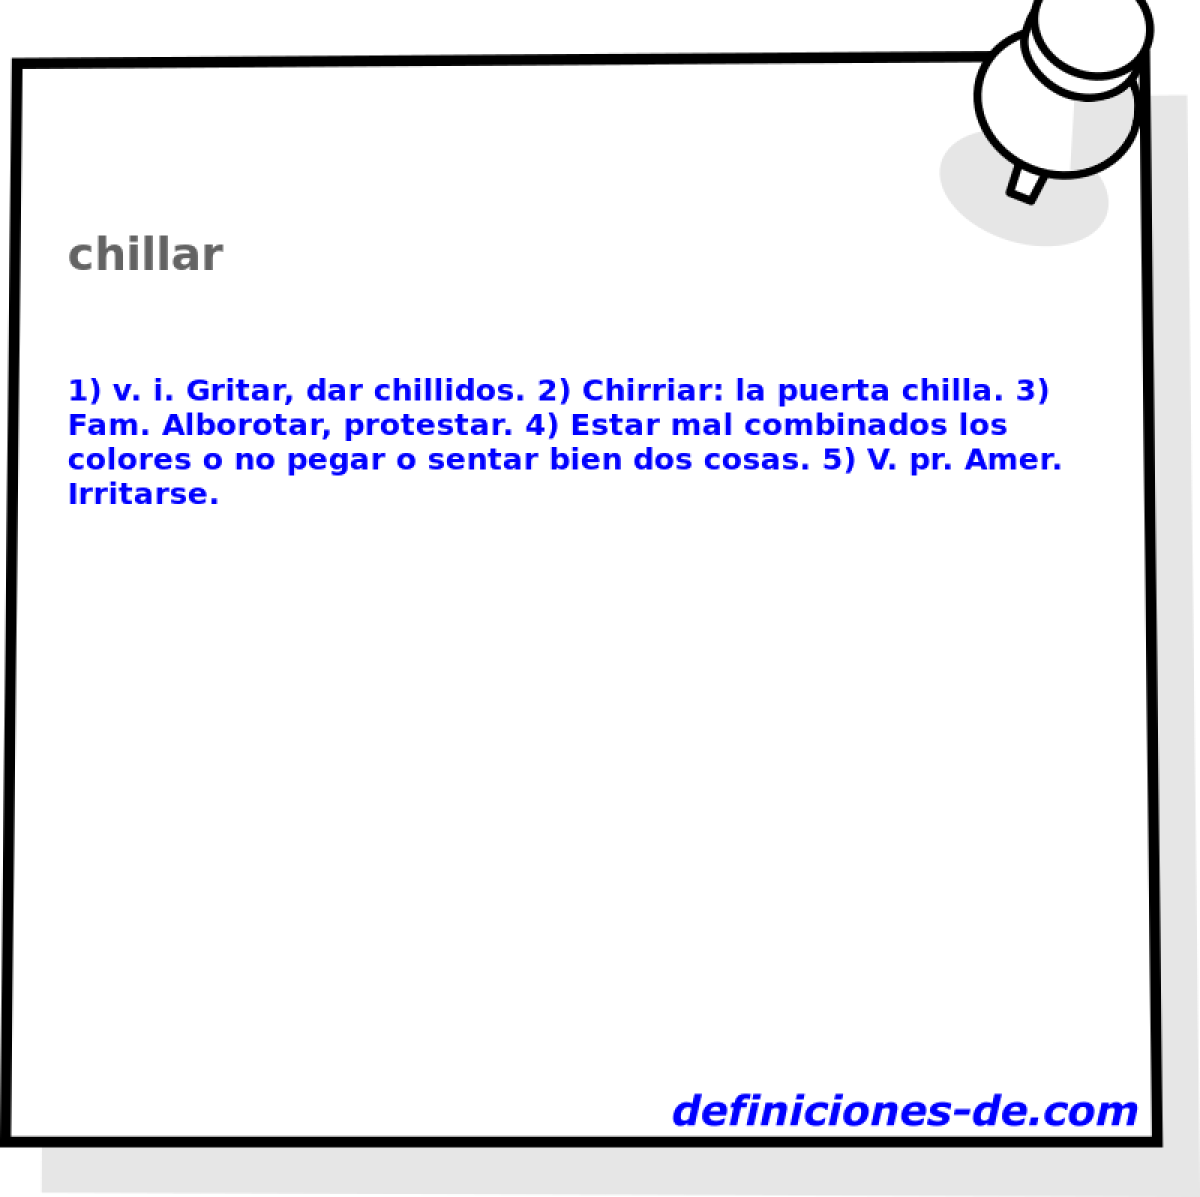 chillar 